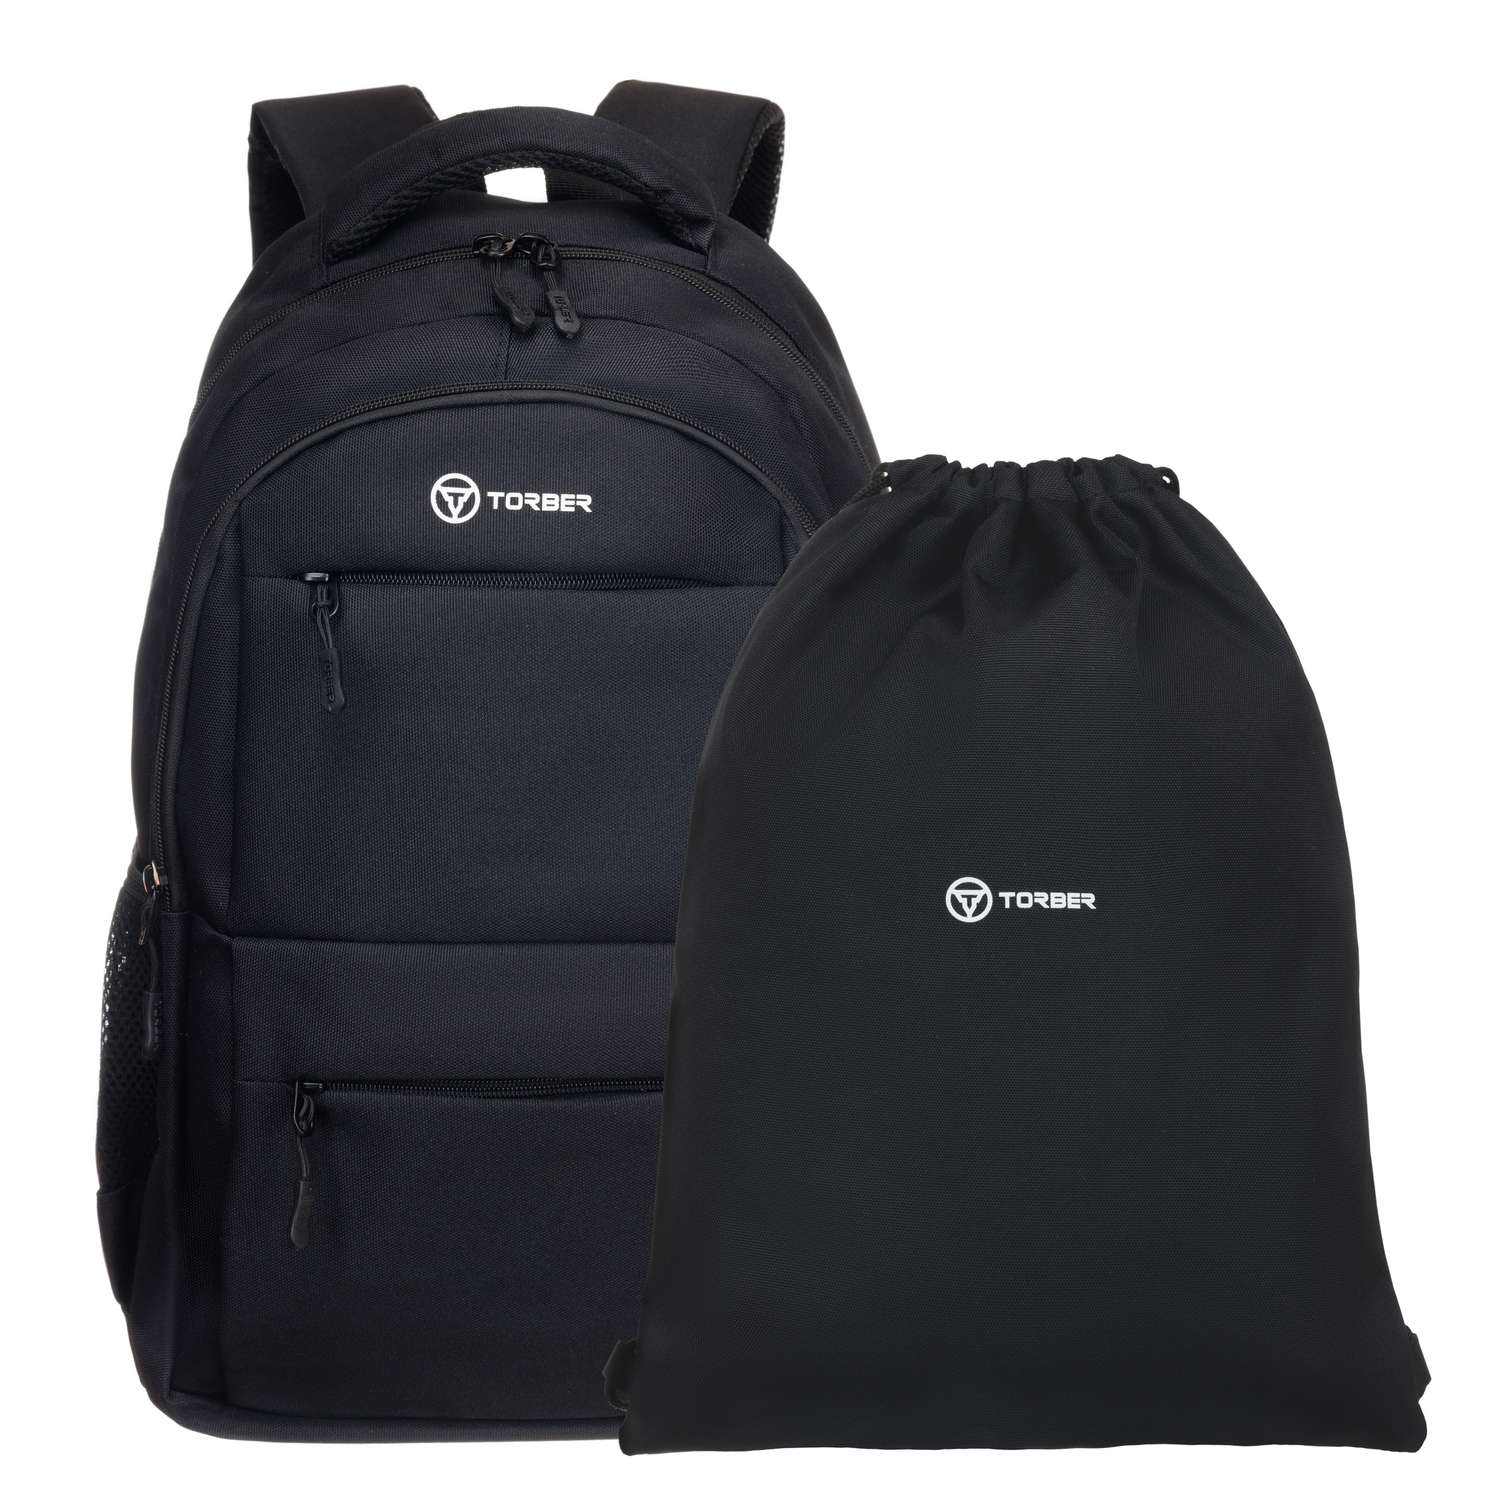 Рюкзак TORBER CLASS X черный и мешок для сменной обуви - фото 1